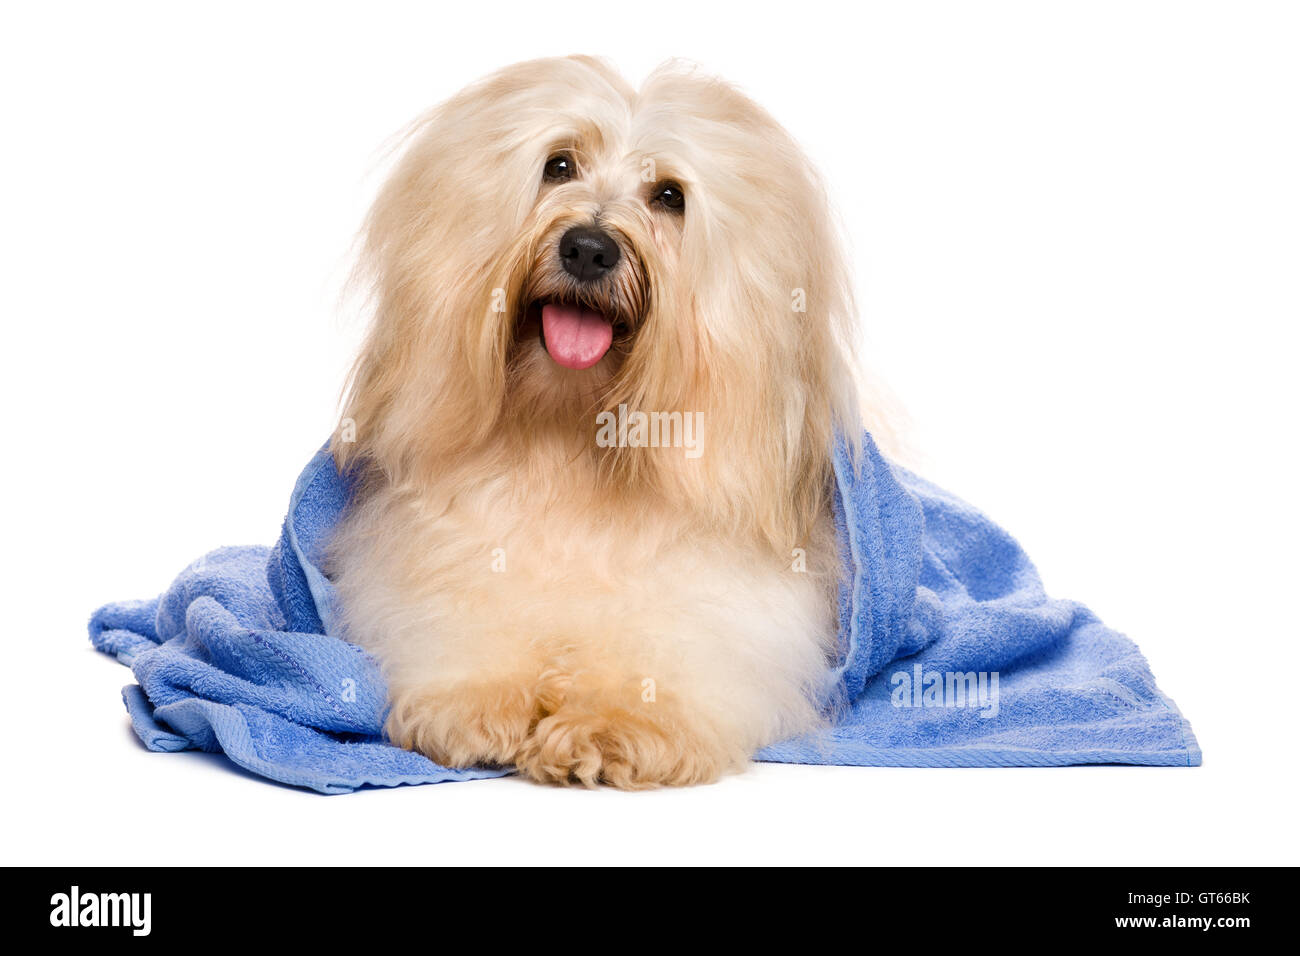 Schöne rötliche Havaneser Hund nach Bad in ein blaues Handtuch liegen Stockfoto